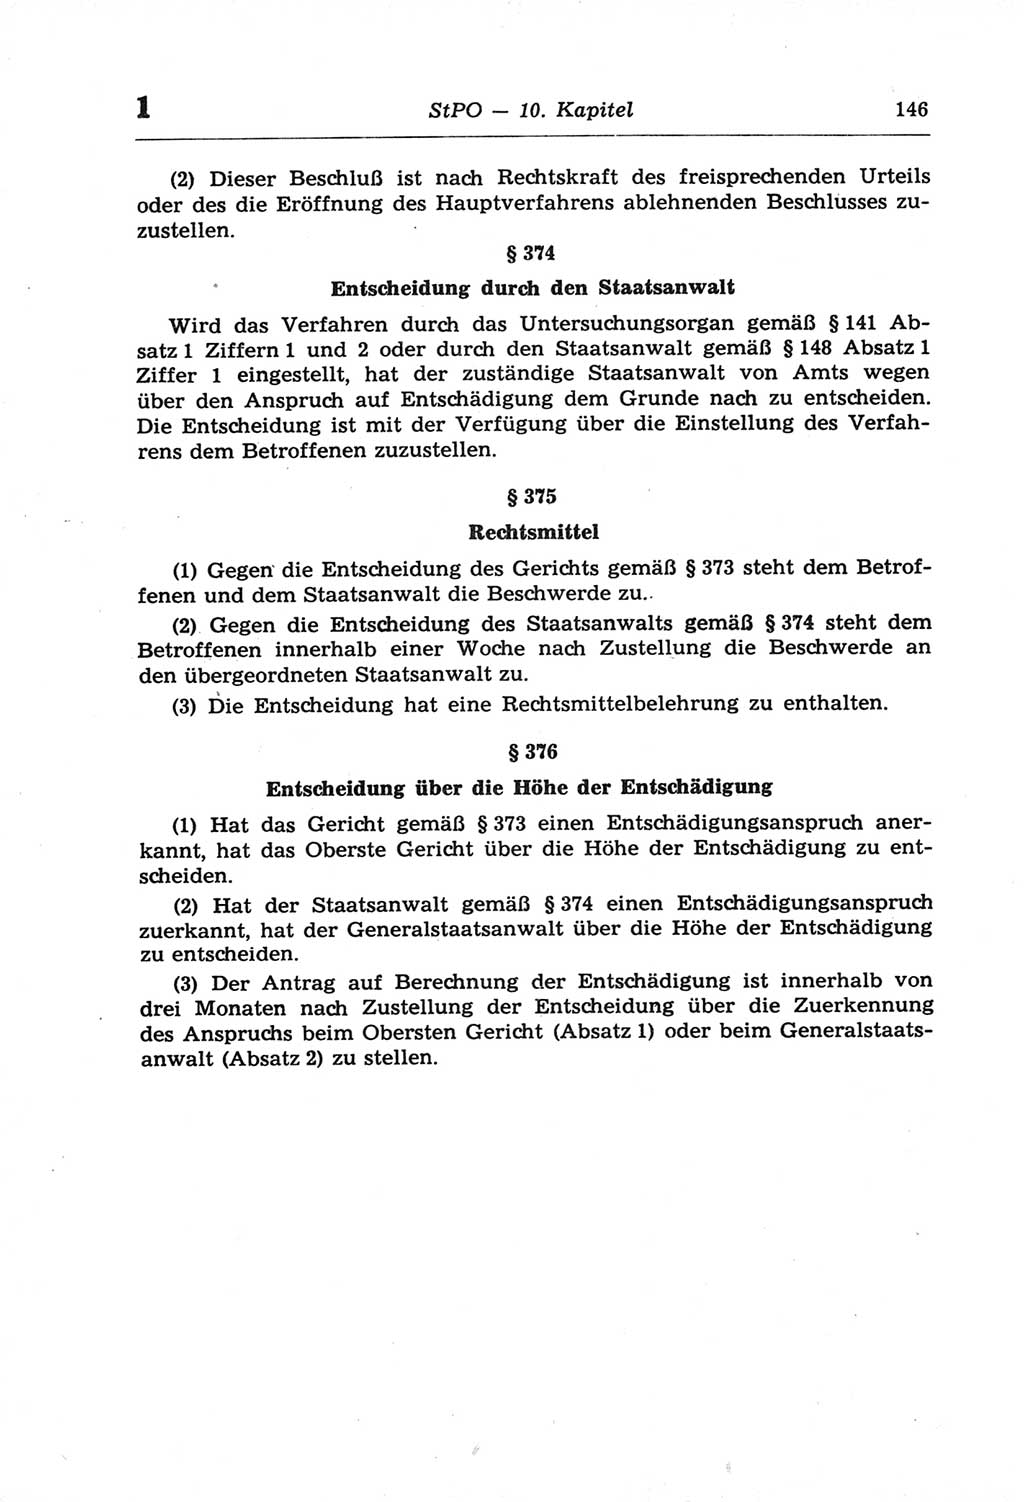 Strafprozeßordnung (StPO) der Deutschen Demokratischen Republik (DDR) und angrenzende Gesetze und Bestimmungen 1968, Seite 146 (StPO Ges. Bstgn. DDR 1968, S. 146)